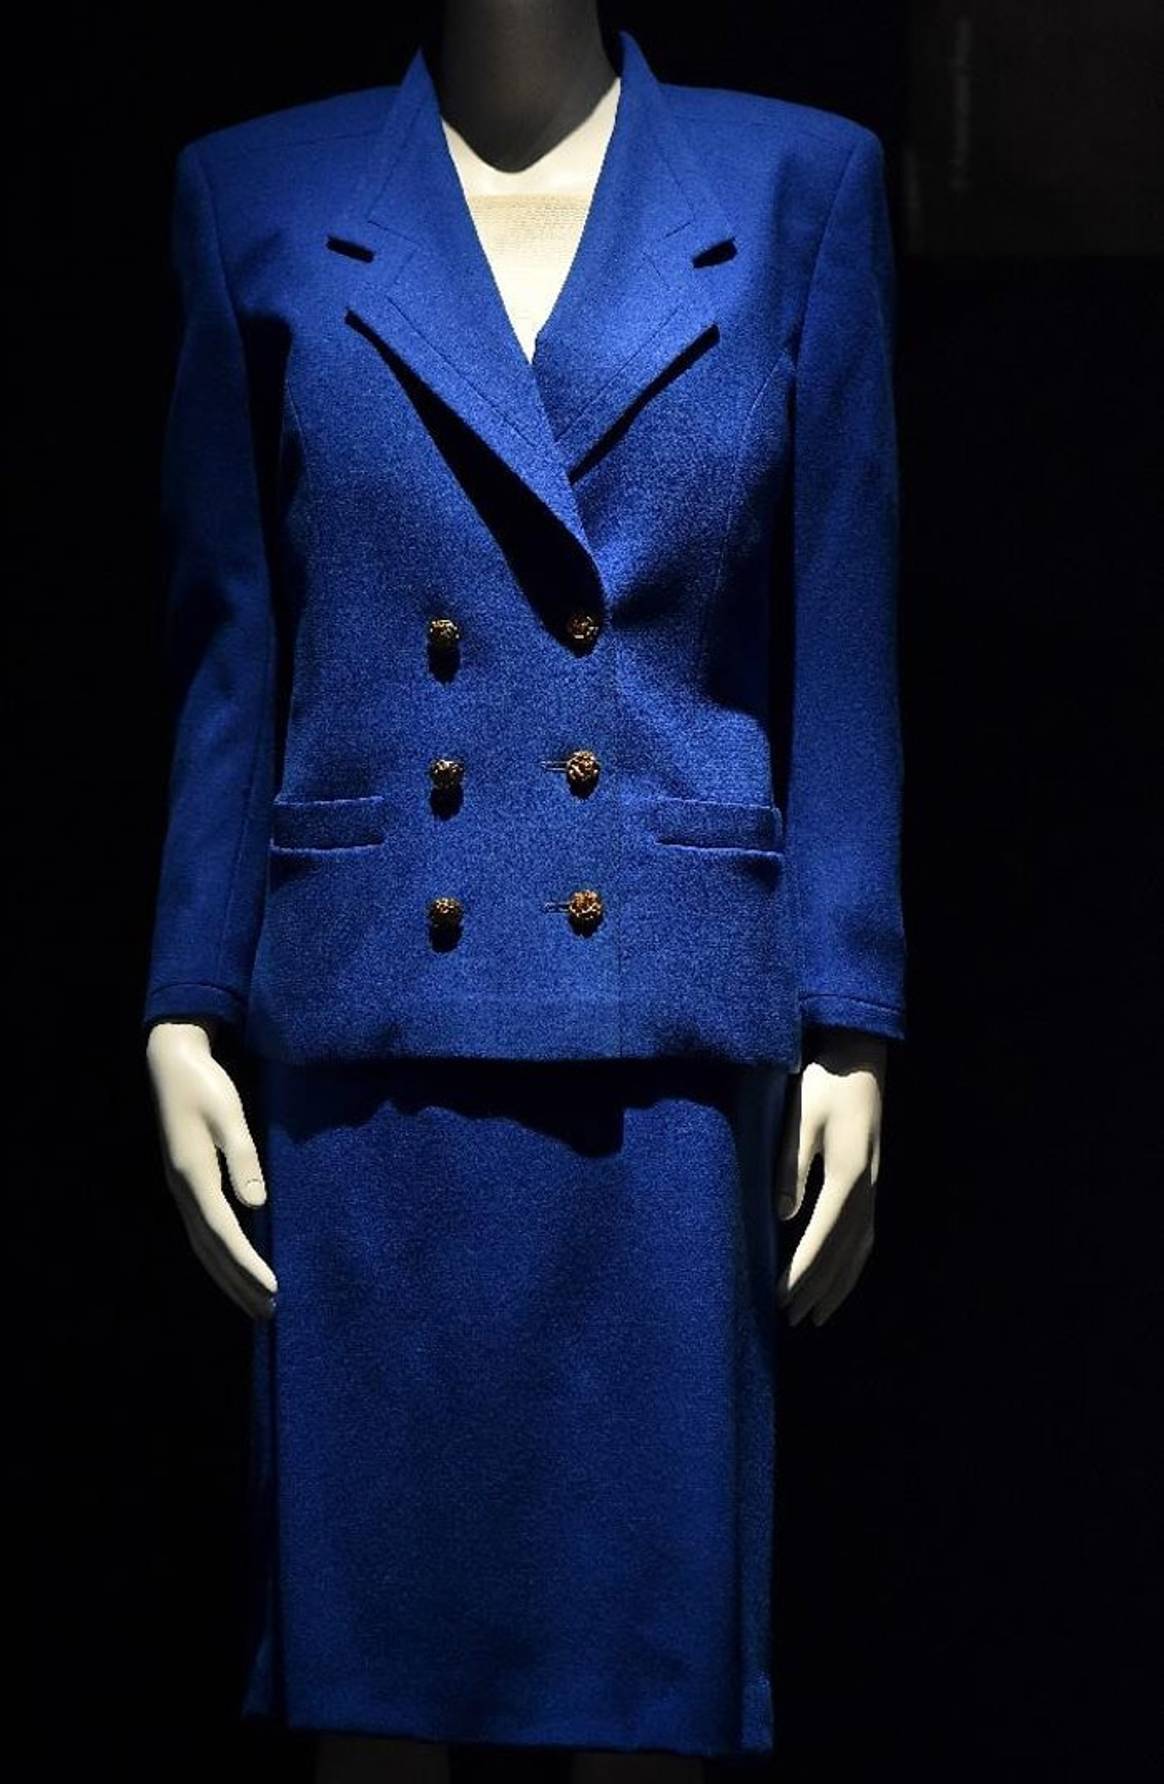 La pasión de Thatcher por la moda se muestra antes de la venta en el Reino Unido.